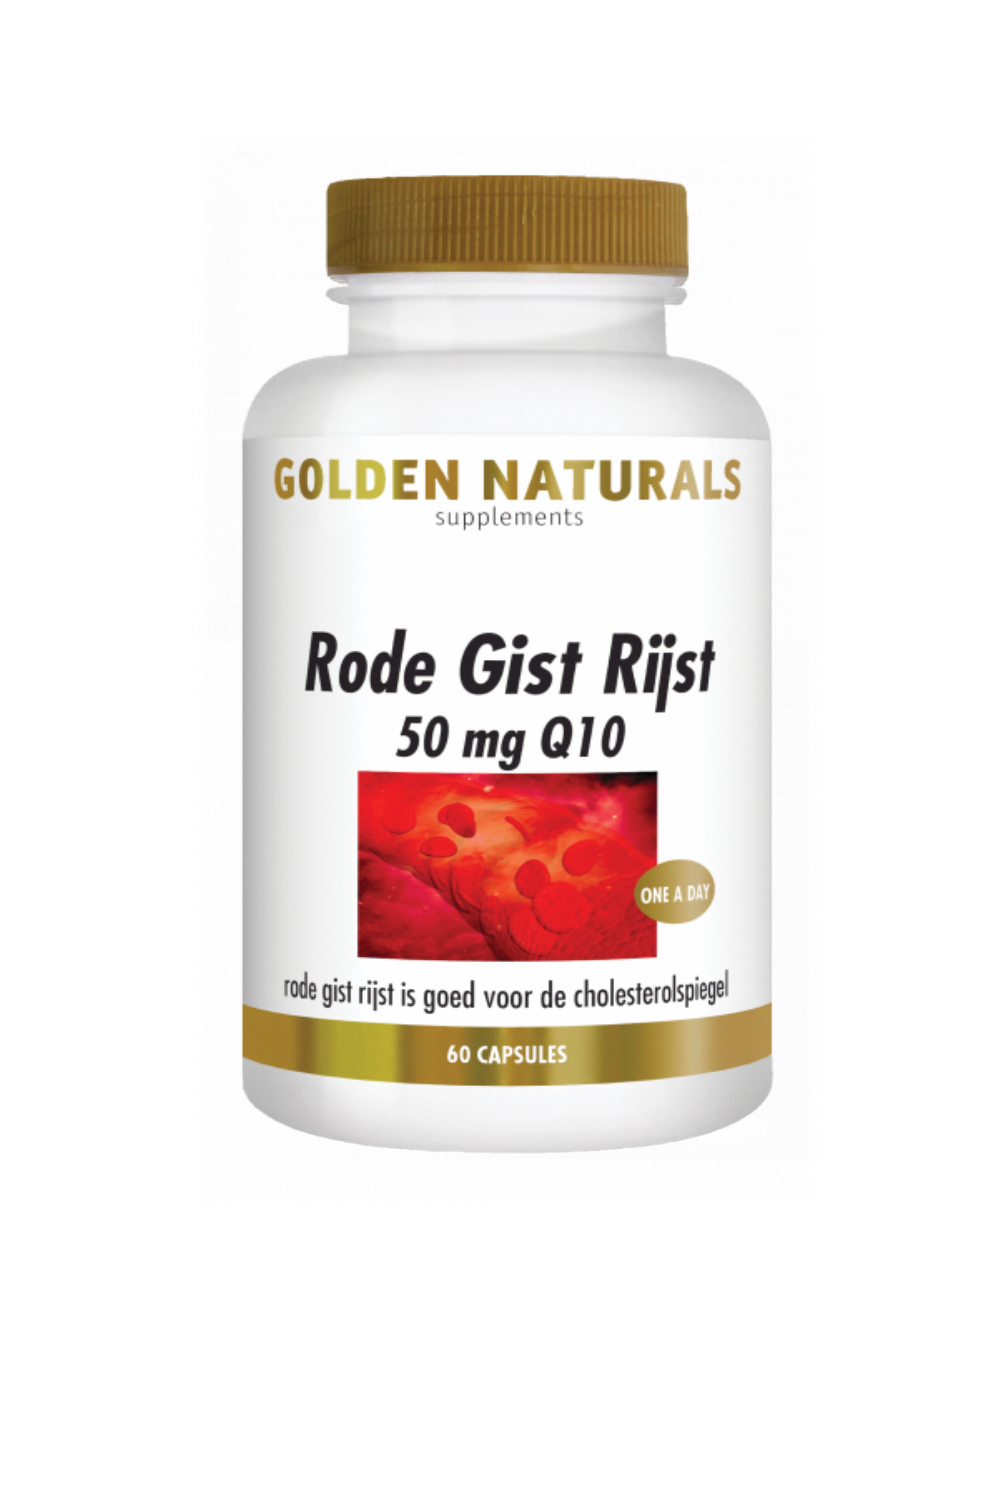 Rode gist rijst golden naturals vita24